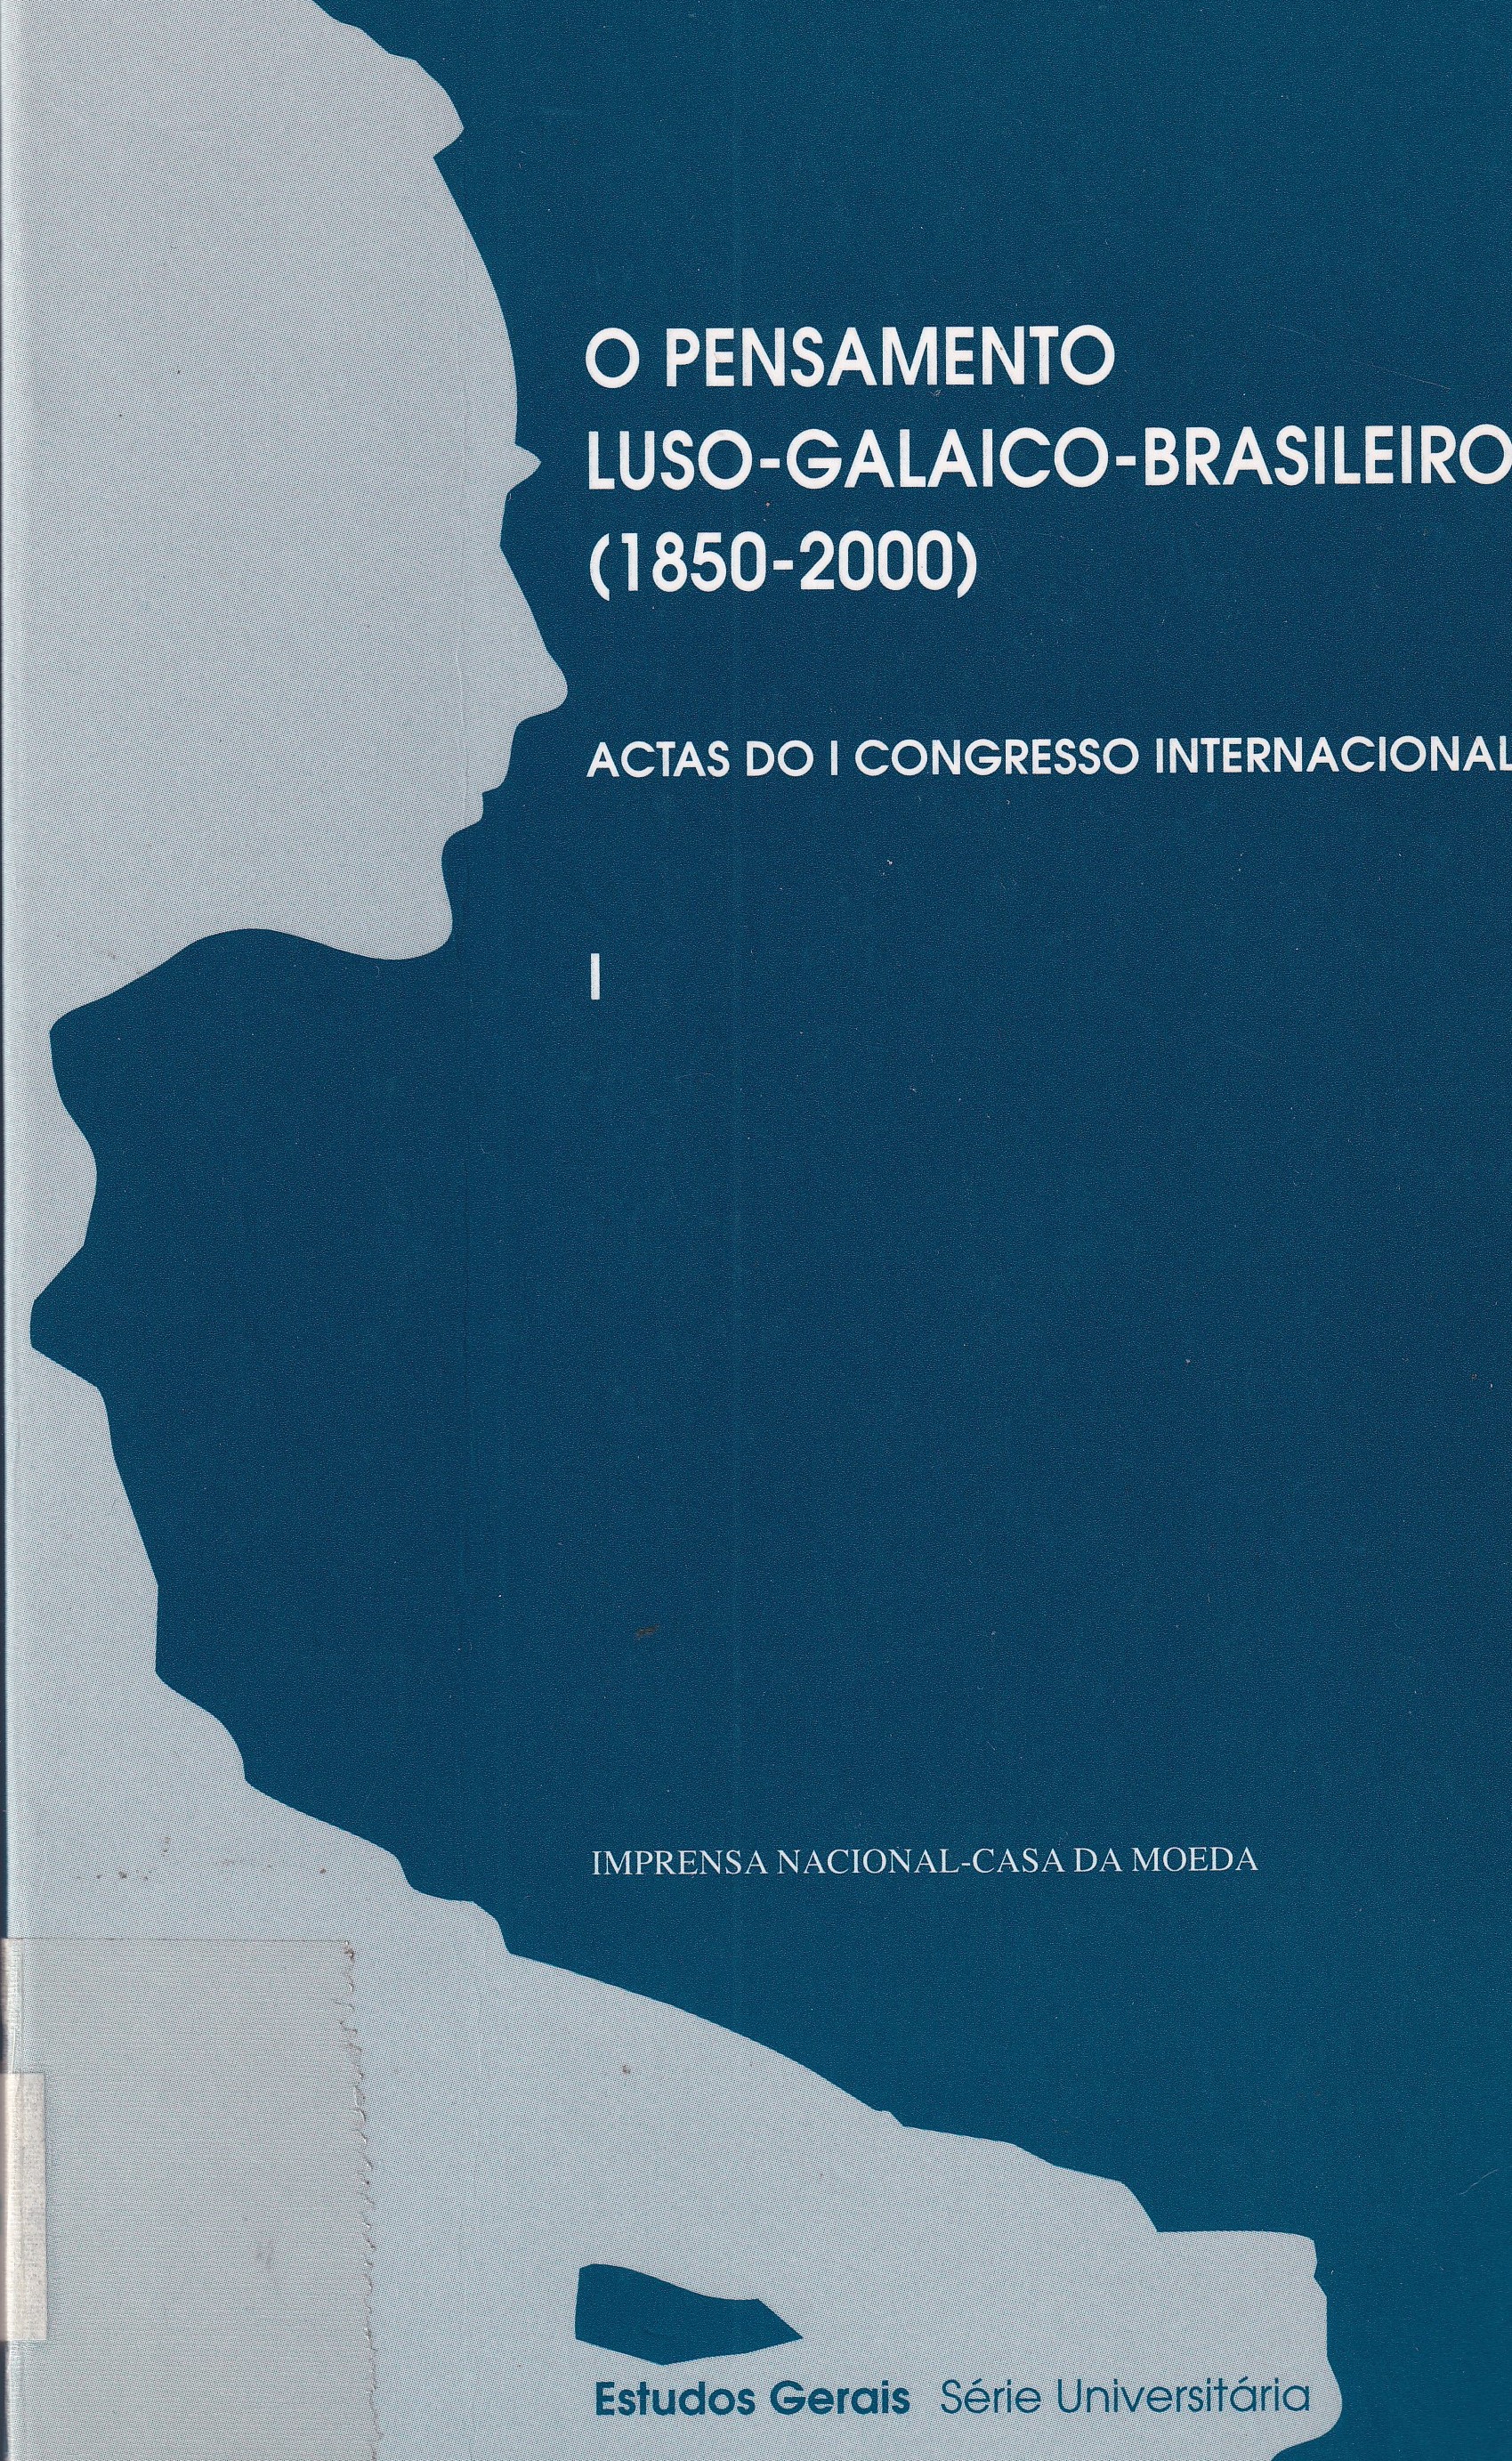 Imagen de portada del libro O pensamento luso-galaico-brasileiro (1850-2000)